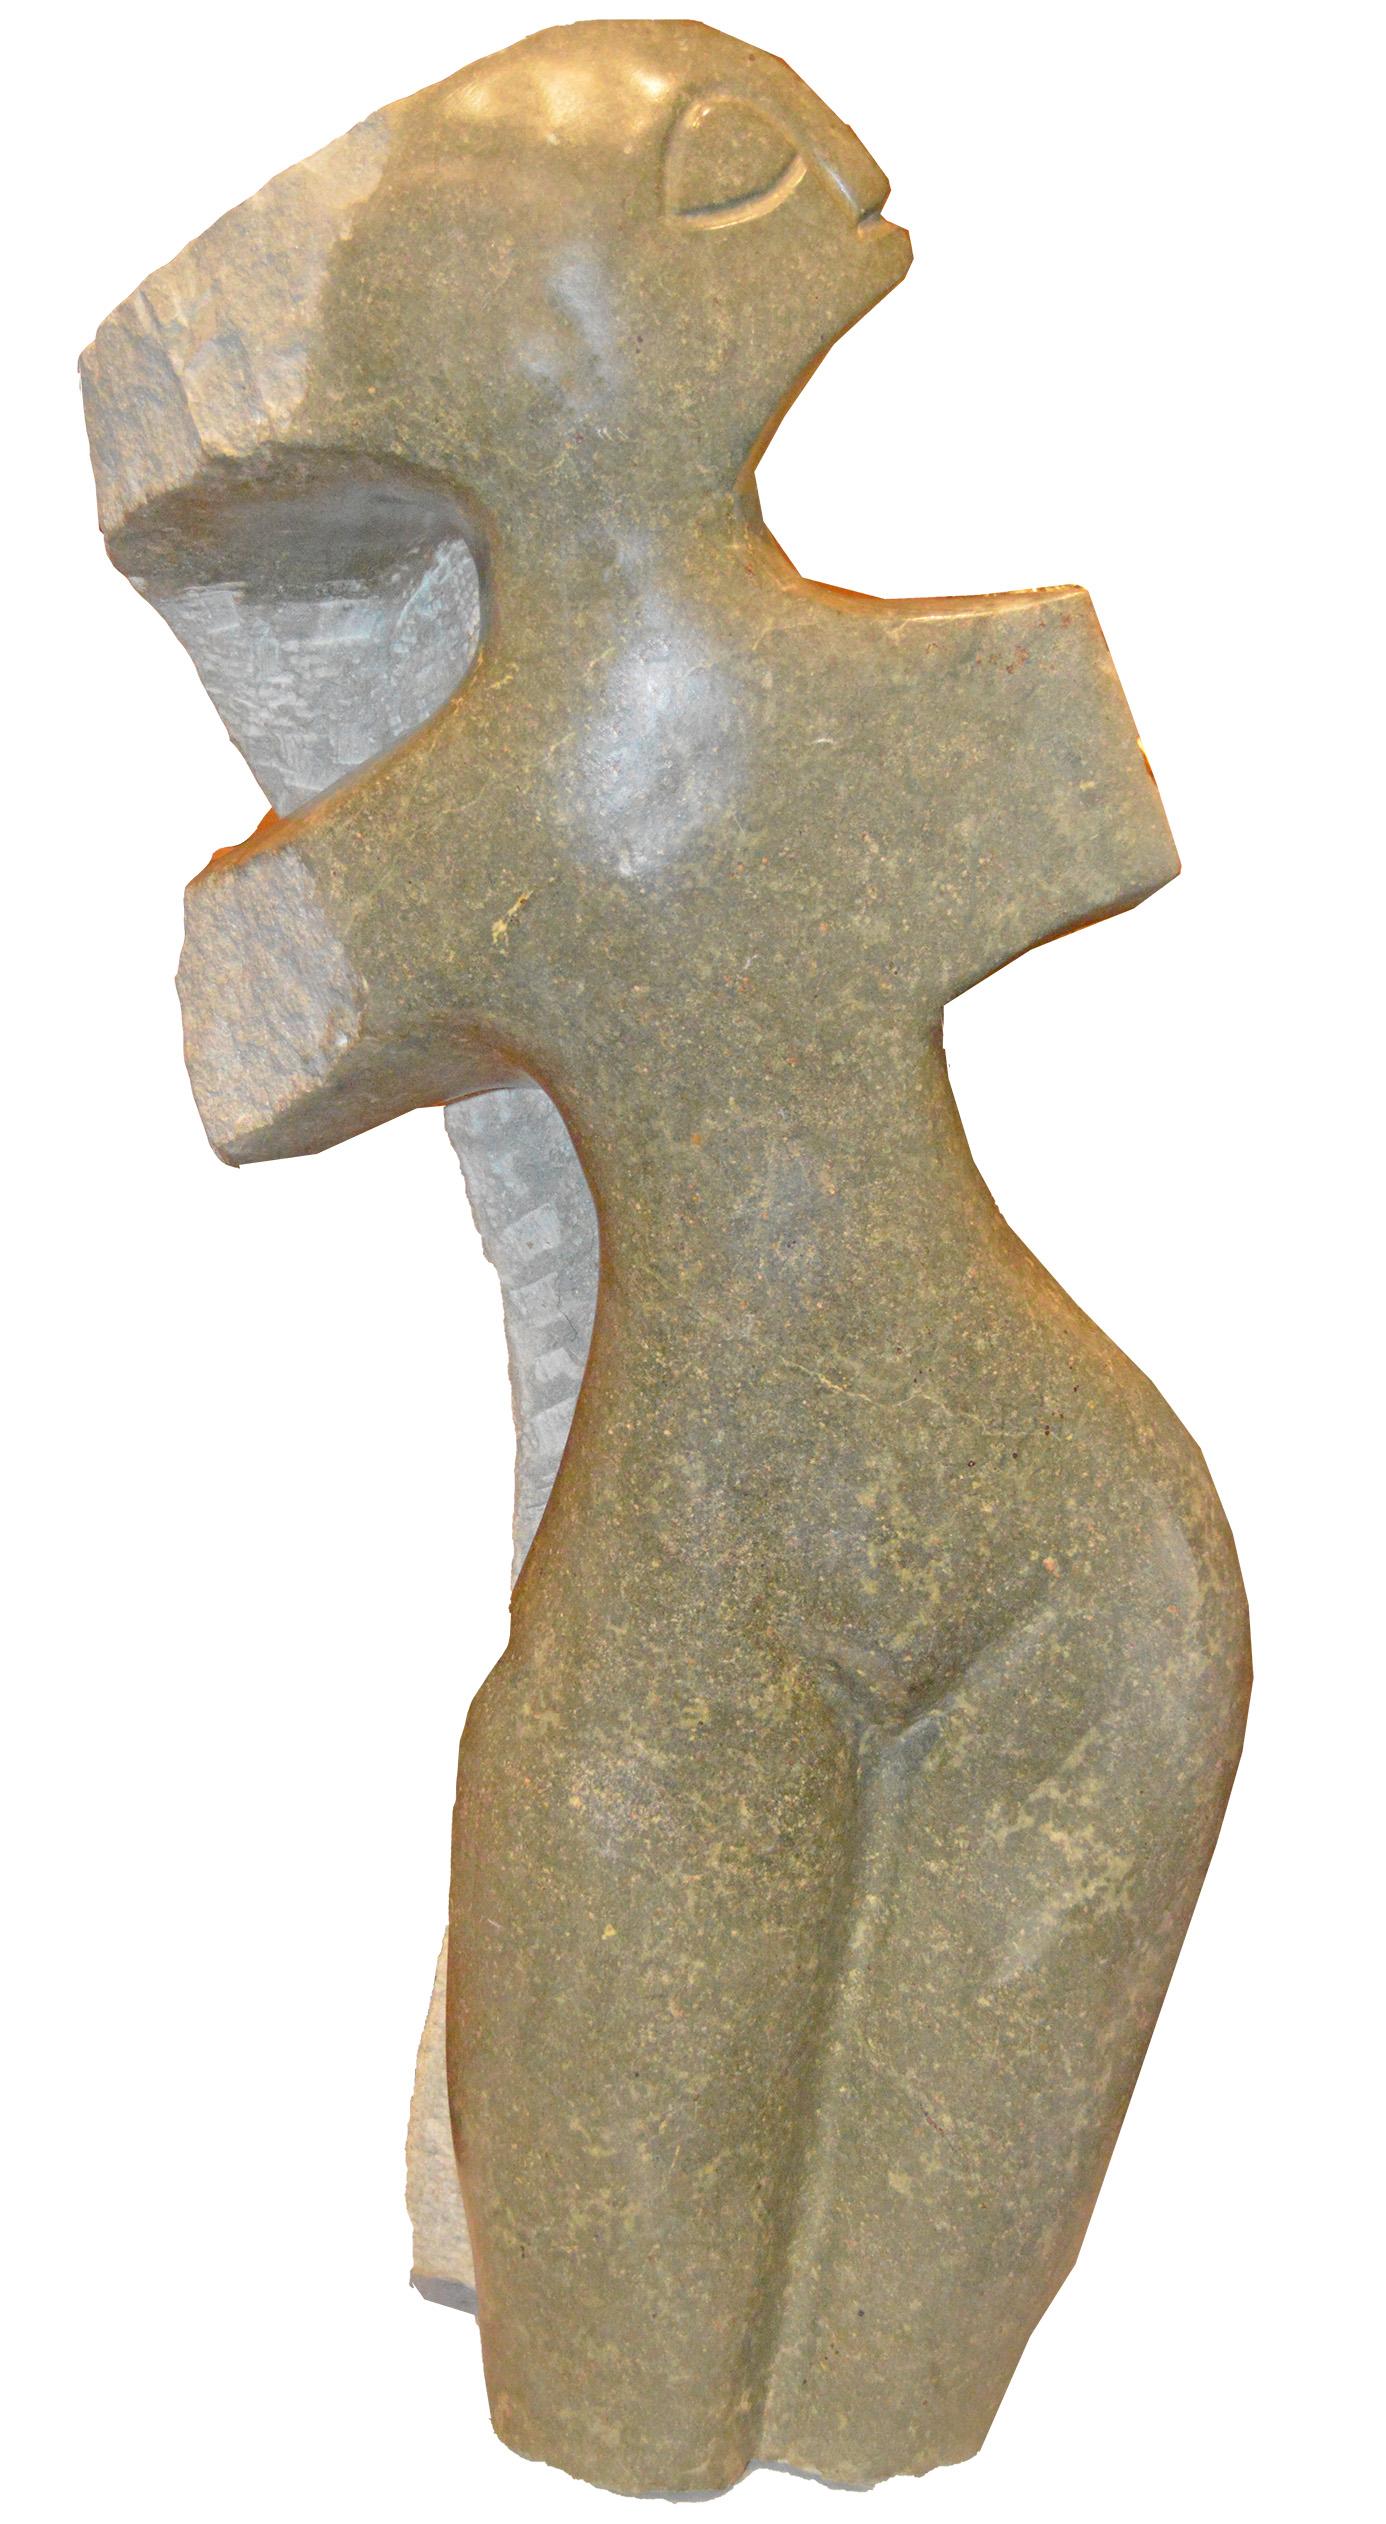 proud Woman" est une sculpture originale en pierre serpentine opale de l'artiste contemporain zimbabwéen Chenjerai Chiripanyanga. L'artiste présente dans cette sculpture la figure très abstraite d'une femme, dont le corps s'incline gracieusement sur